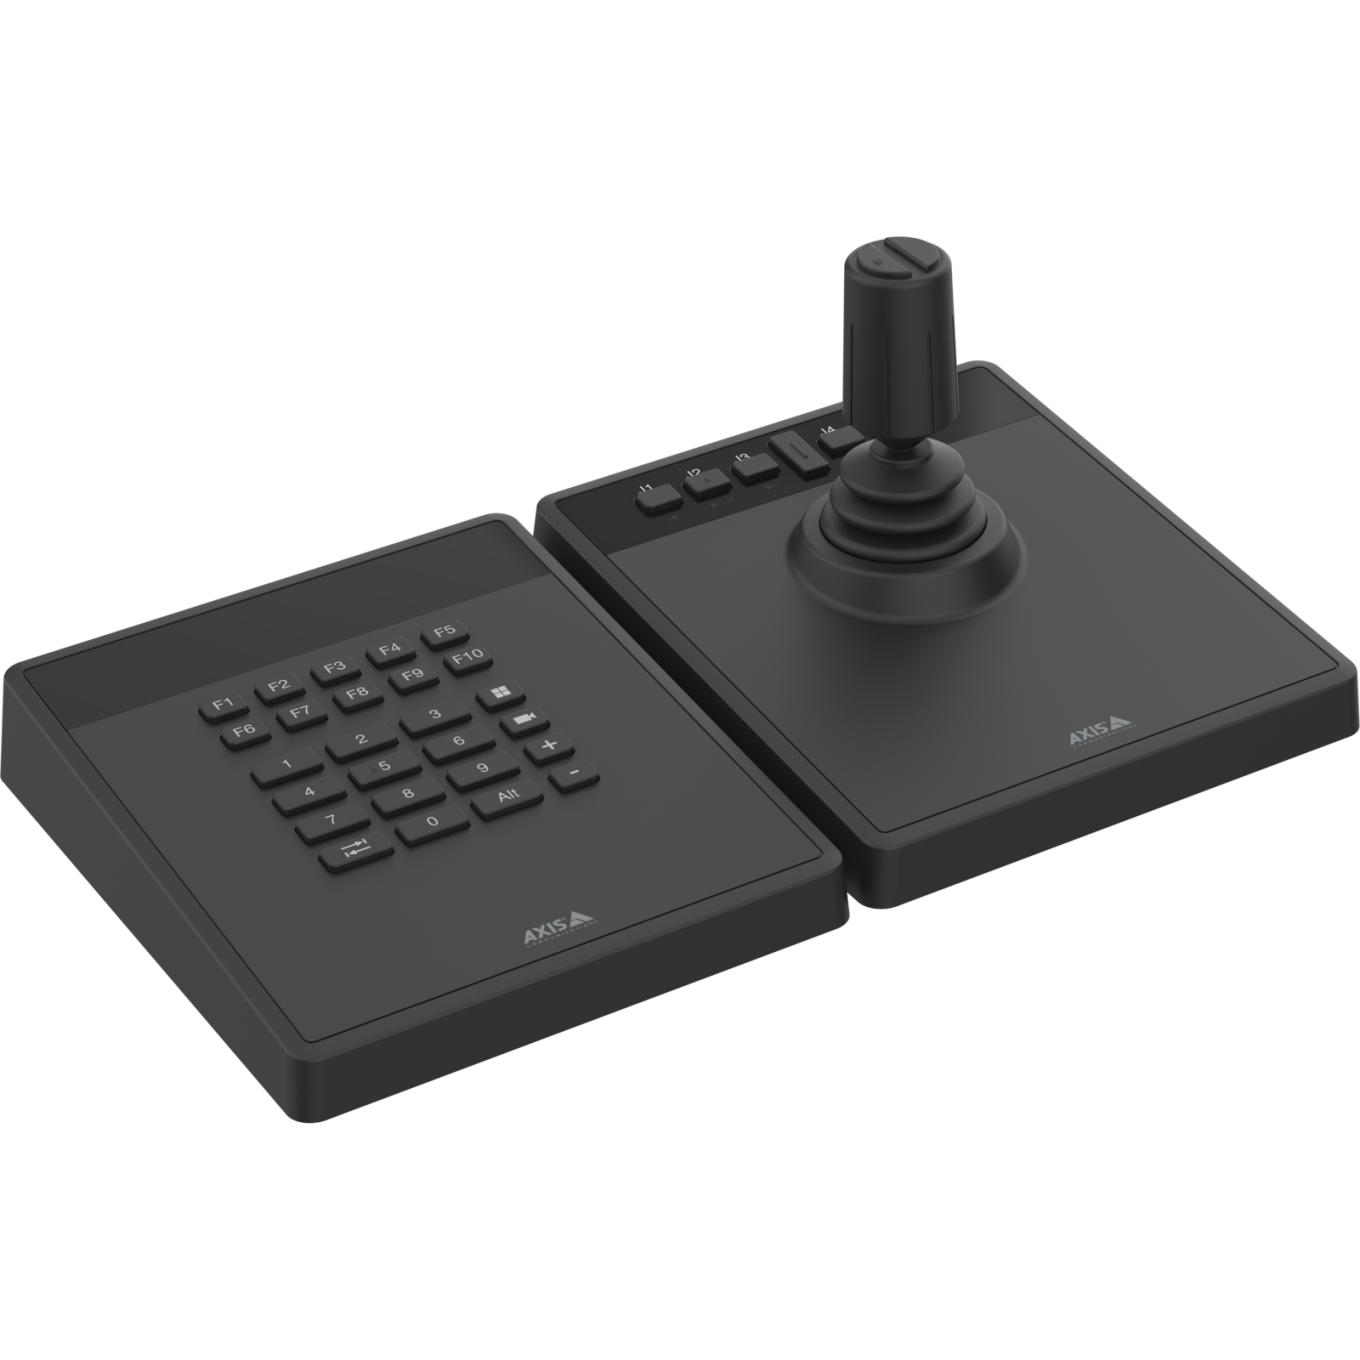 AXIS TU9001 Control Board pour la gestion professionnelle des caméras et des vidéos, clavier et joystick côte à côte, pas de texte sur l'écran LCD